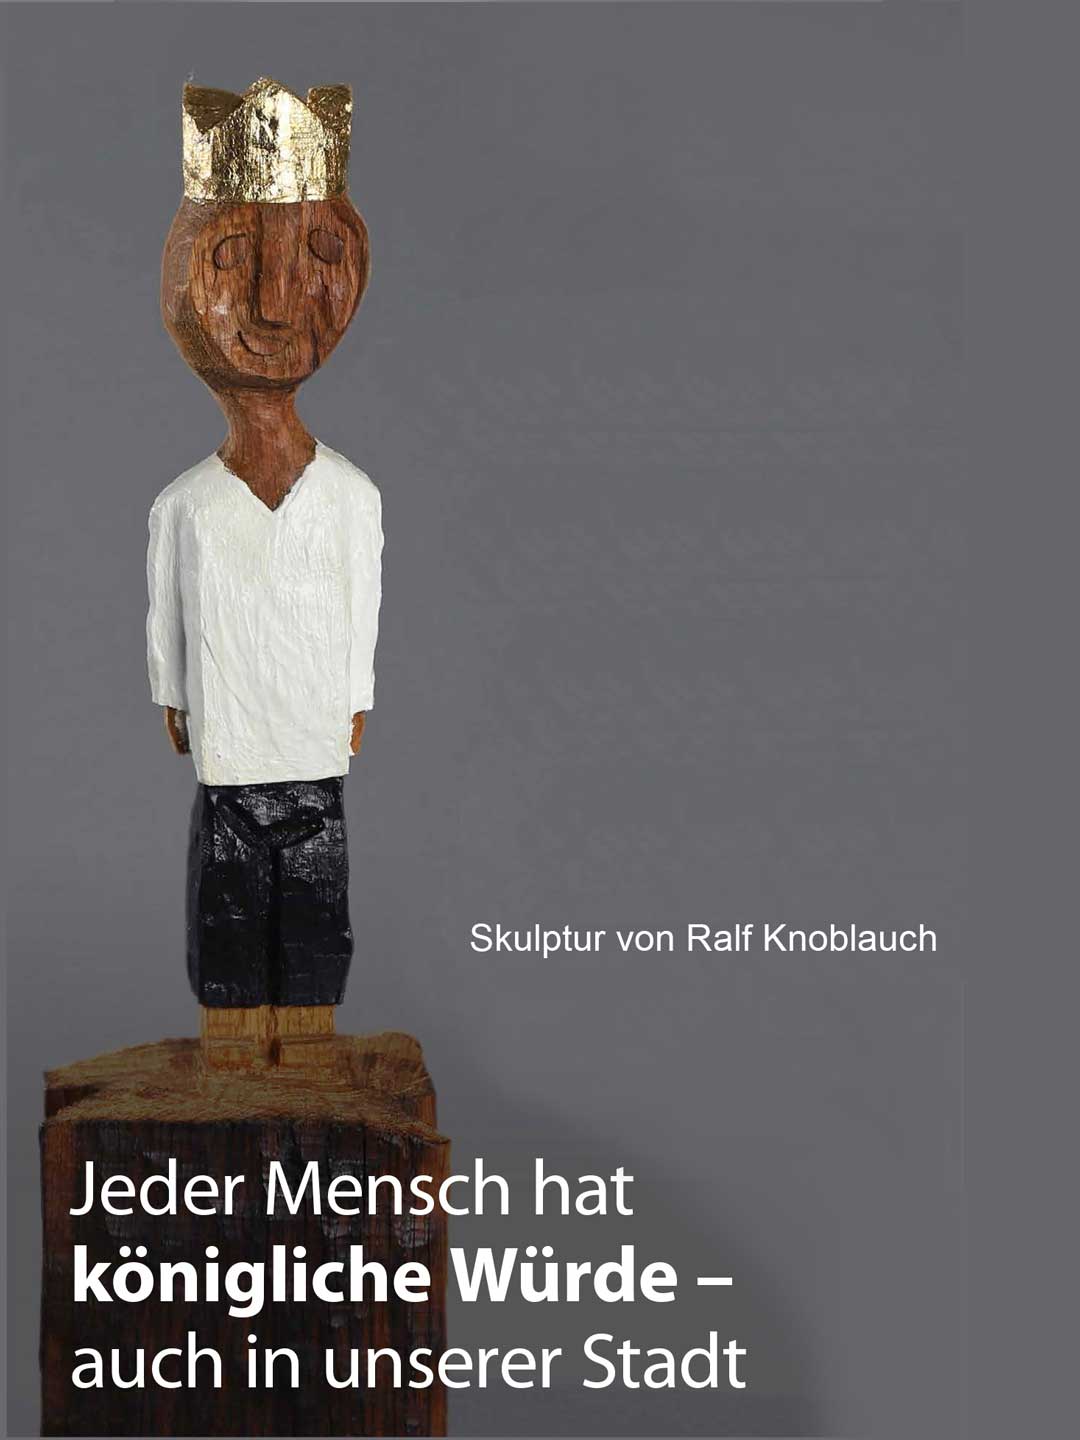 Skulptur von Ralf Knoblauch - Dargestellt ist eine männliche Figur aus Holz geschnitzt mit weißen Hemd, schwarzer Hose und einer Golgkrone auf dem Kopf